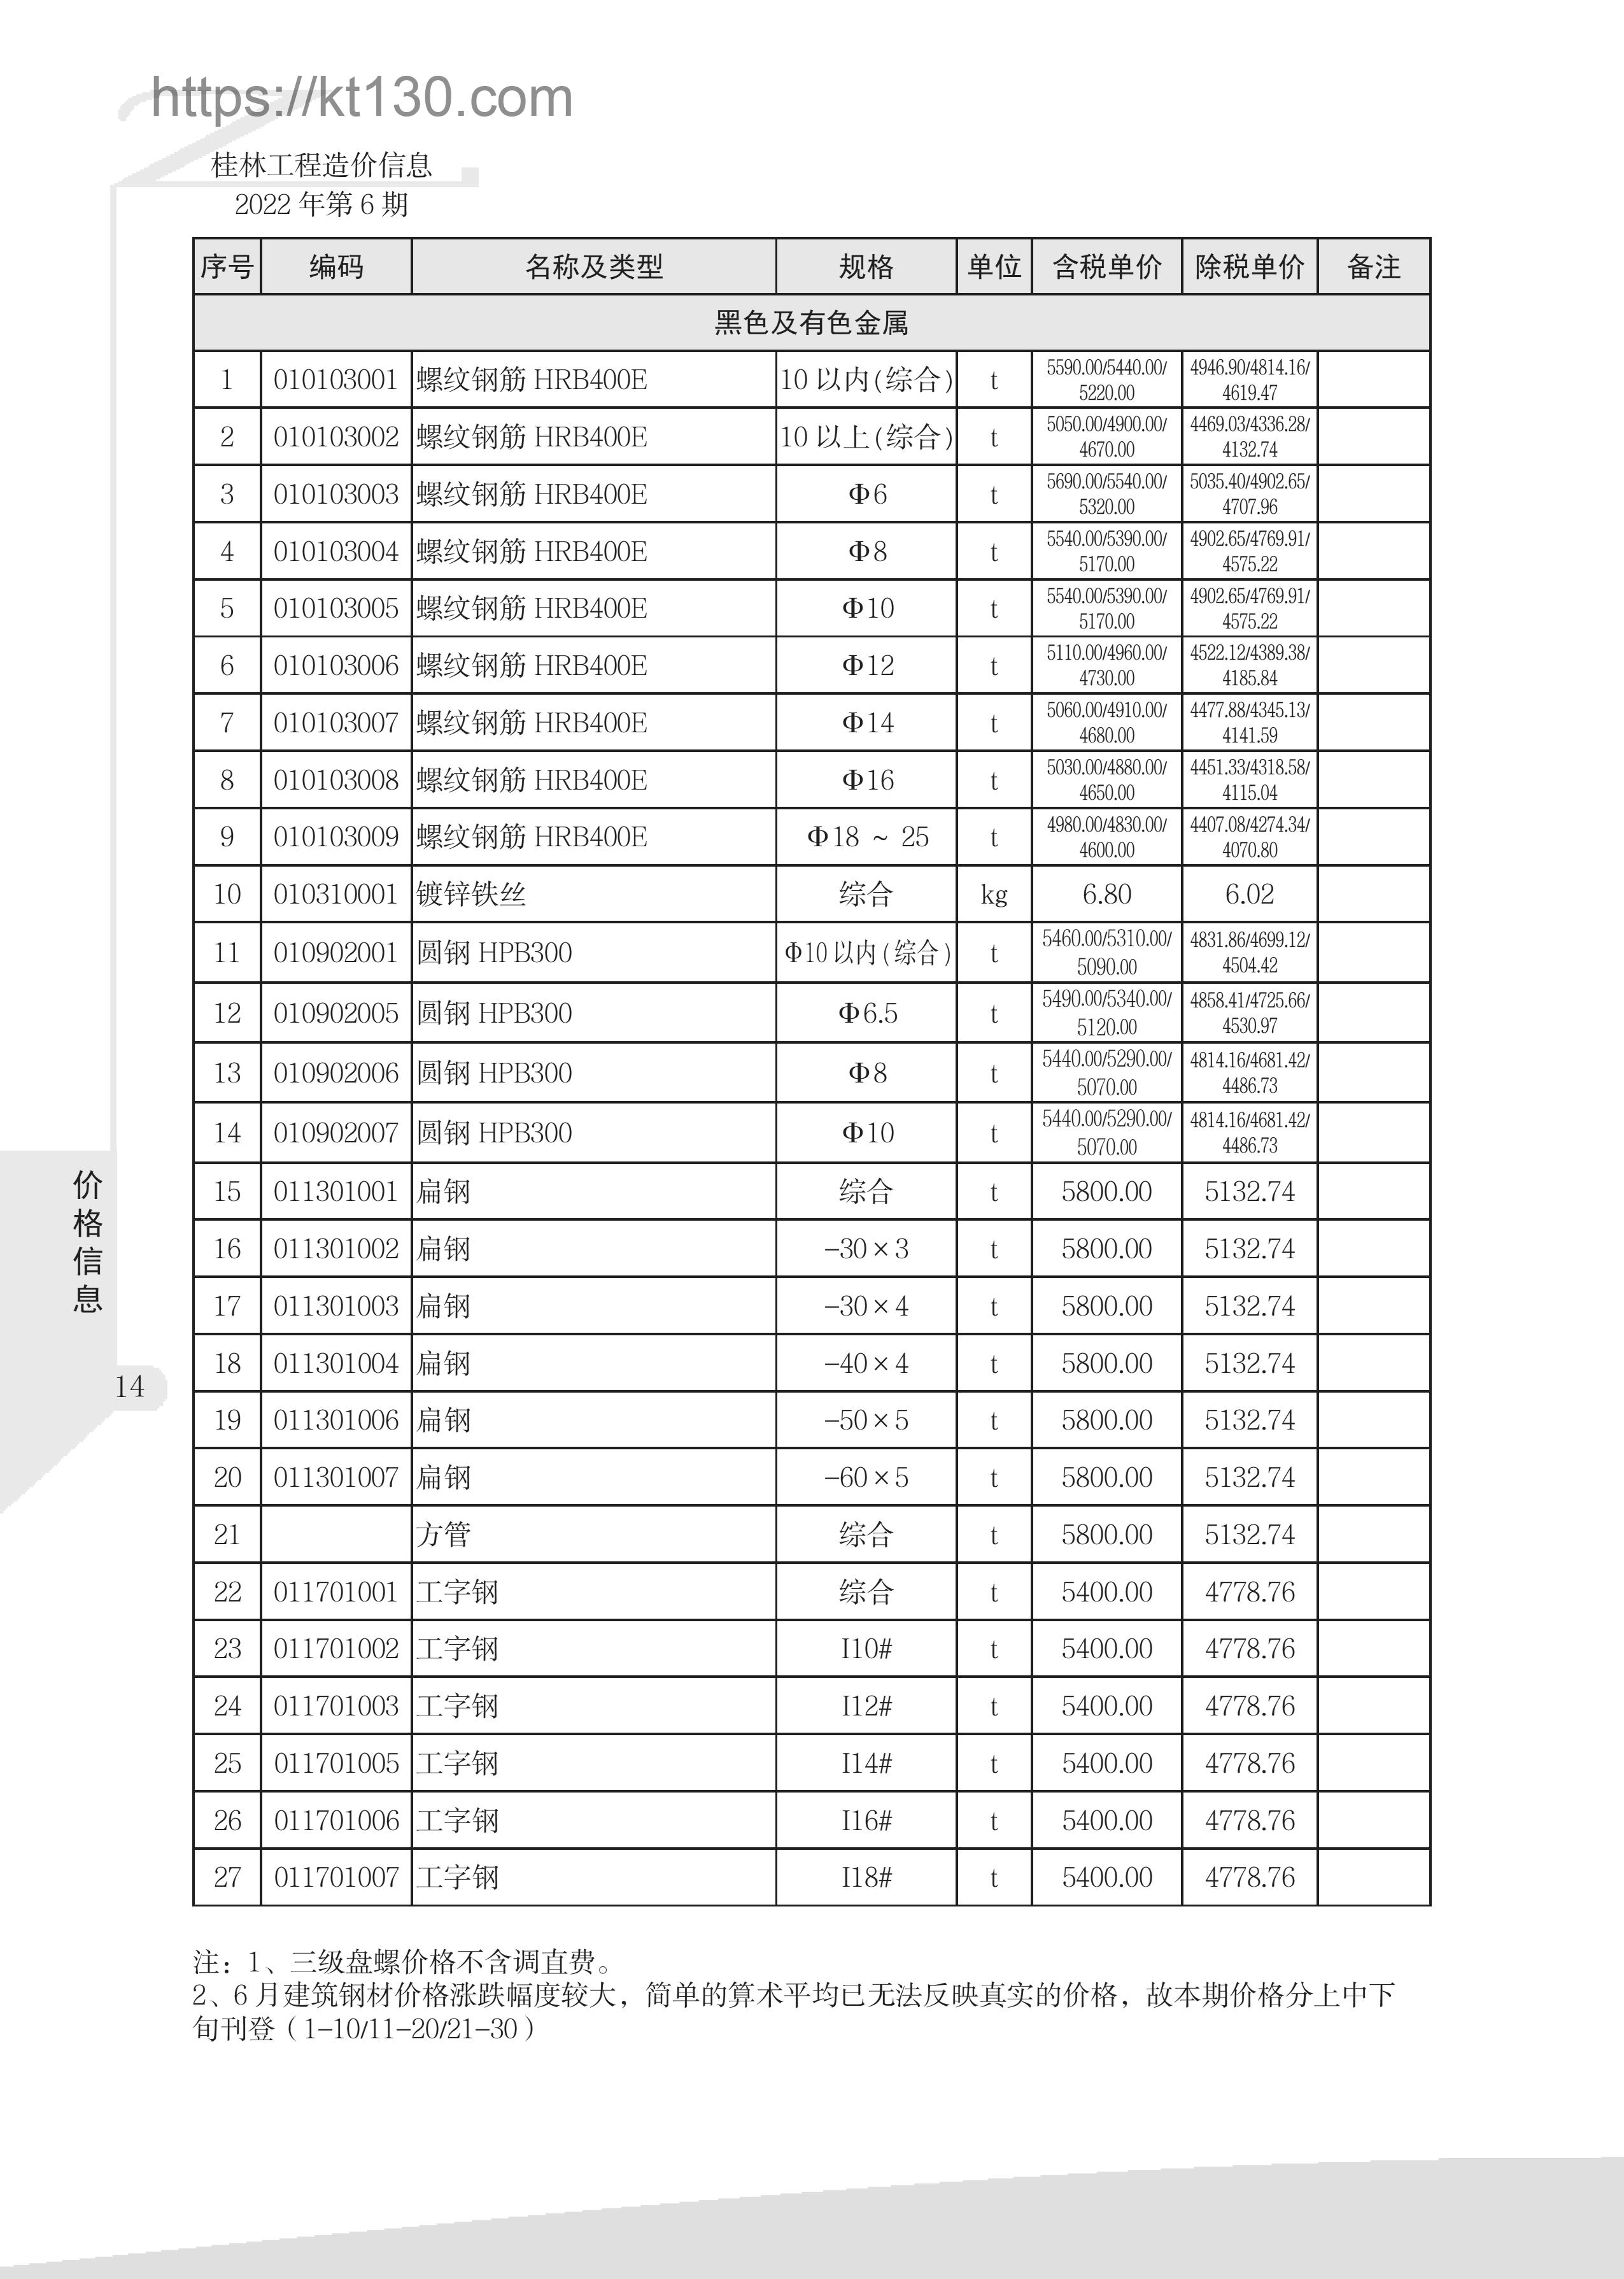 桂林市2022年6月建筑材料价_黑色及有色金属_51891